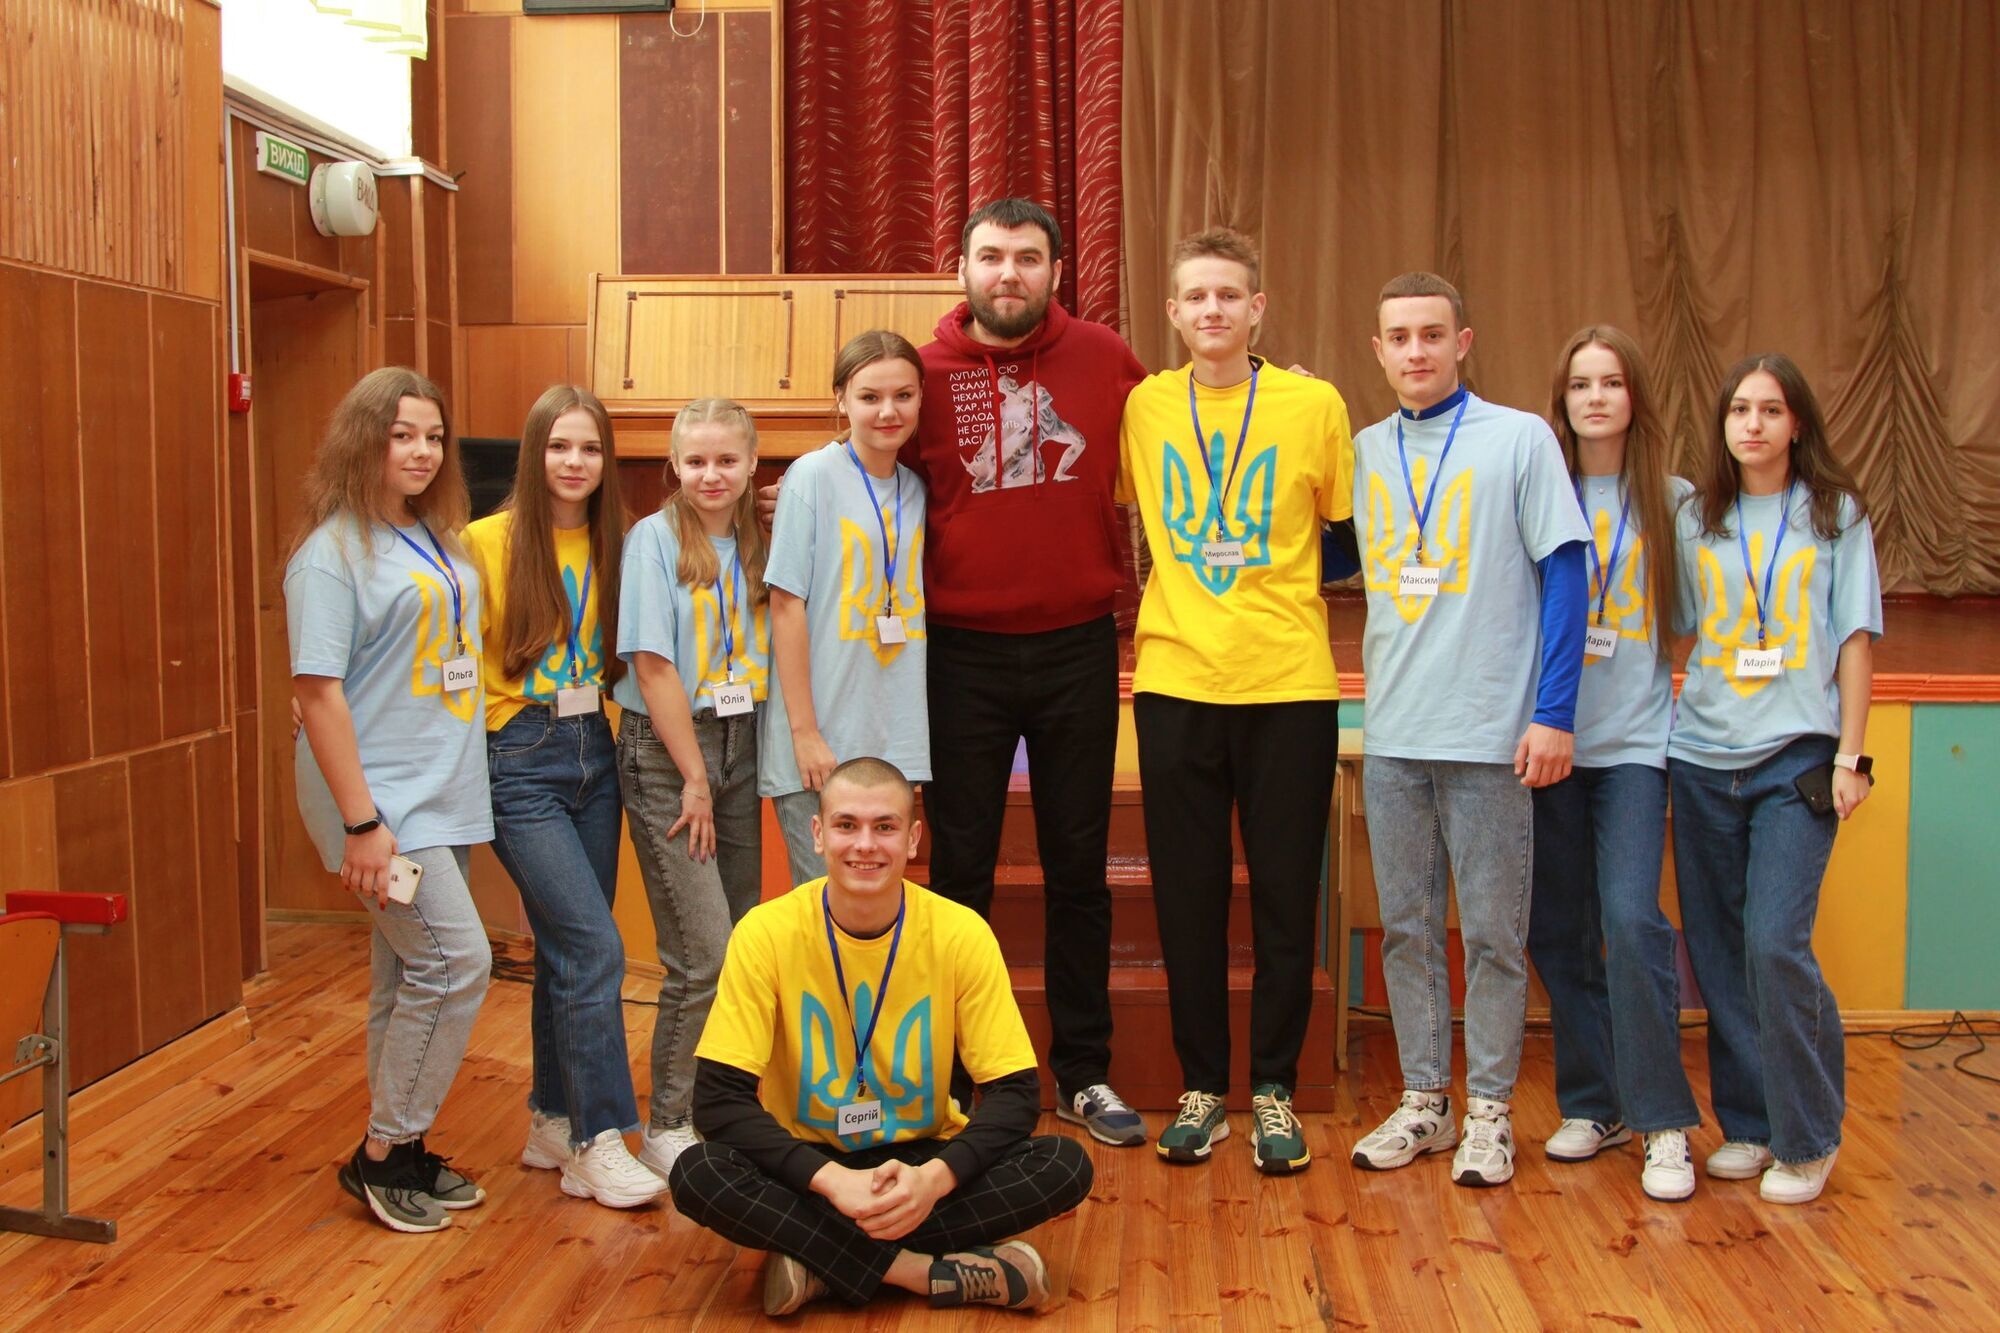 Po raz pierwszy w historii Ukrainiec znalazł się wśród 10 najlepszych nauczycieli na świecie. Kim jest Artur Projdakow i dlaczego dzieci go uwielbiają?